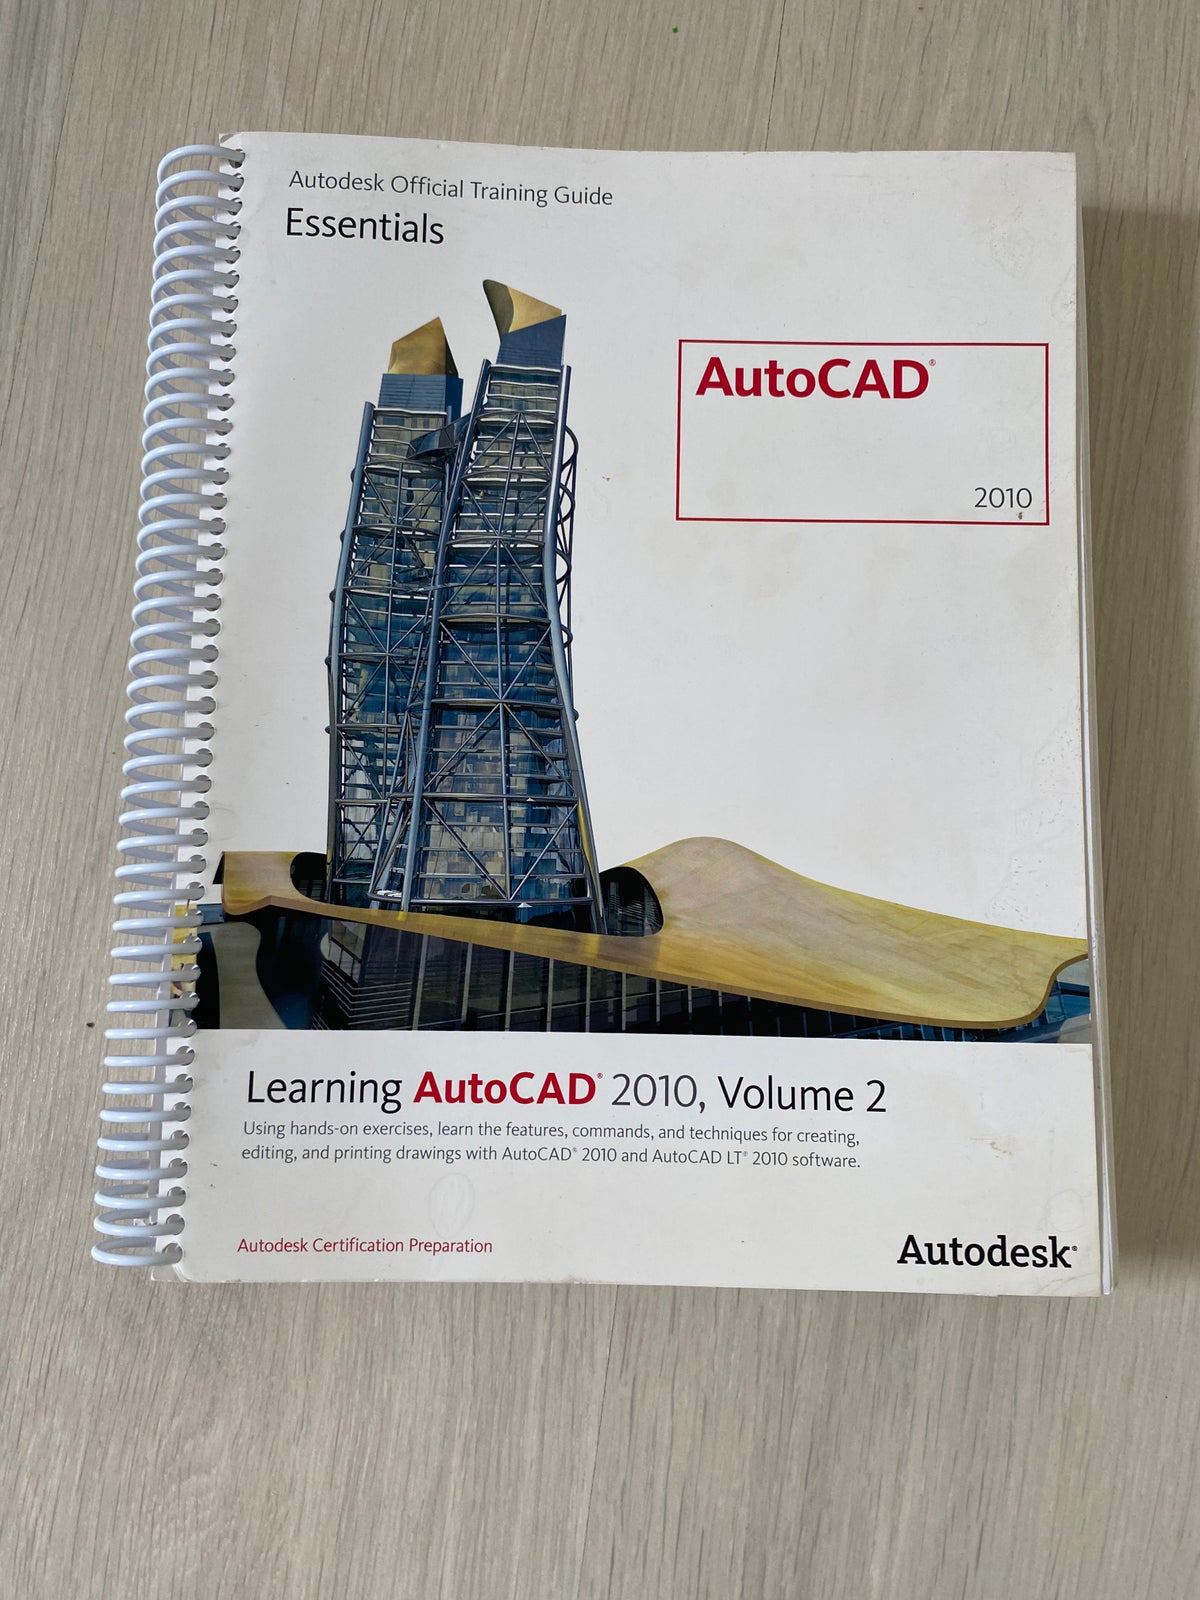 Learning AutoCAD, Autodesk